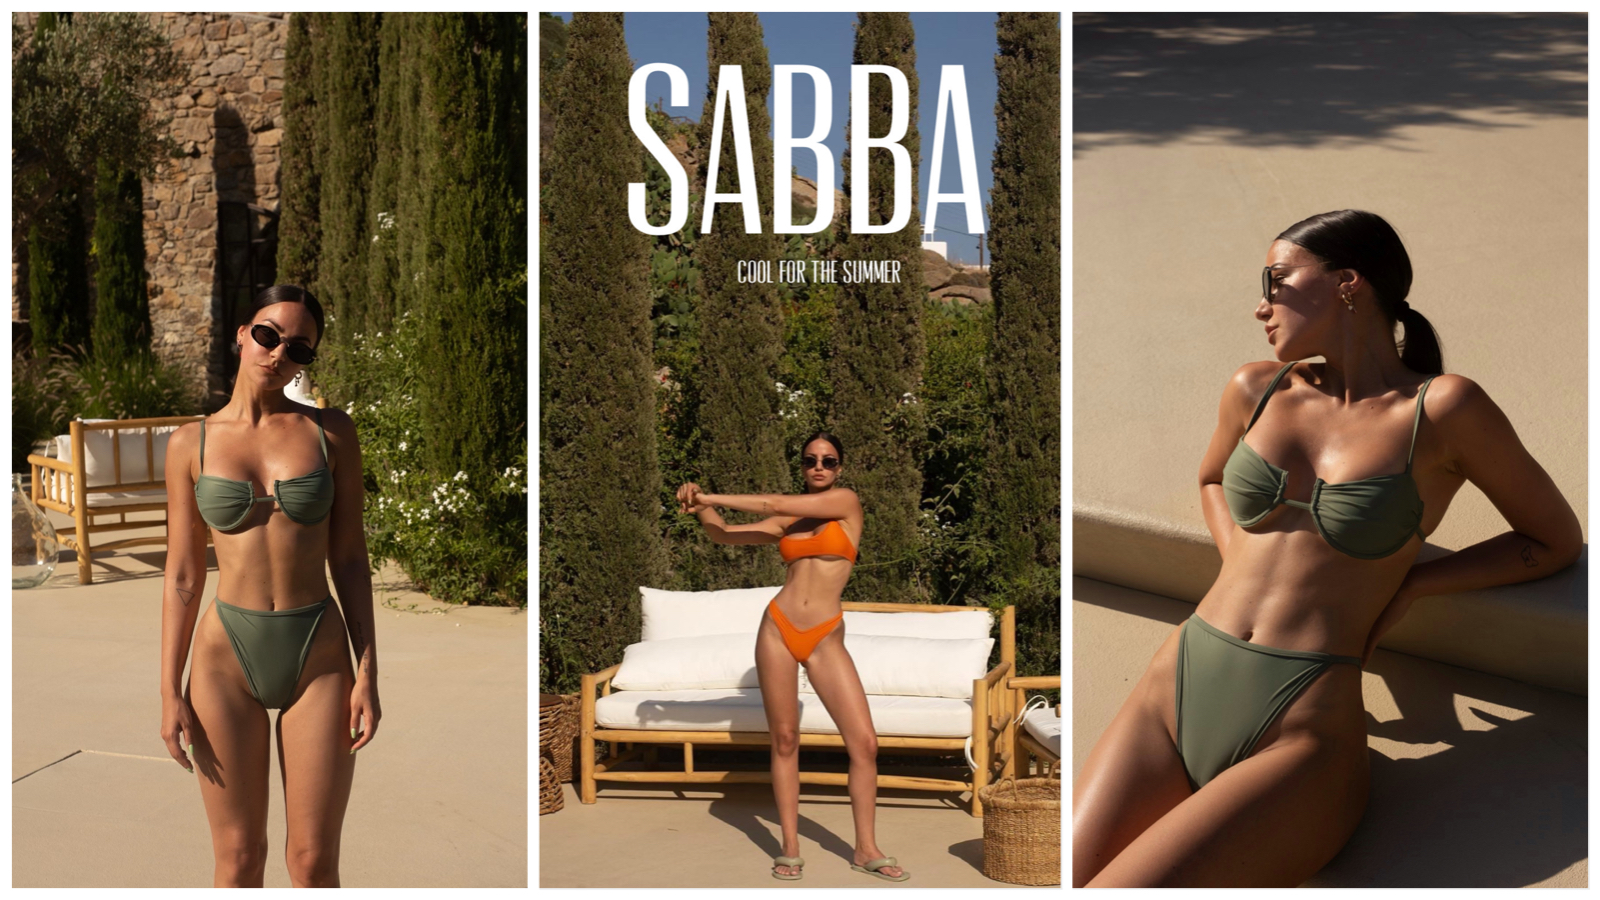 Mykonos kao destinacija promo kampanje nove kolekcije brenda Sabba